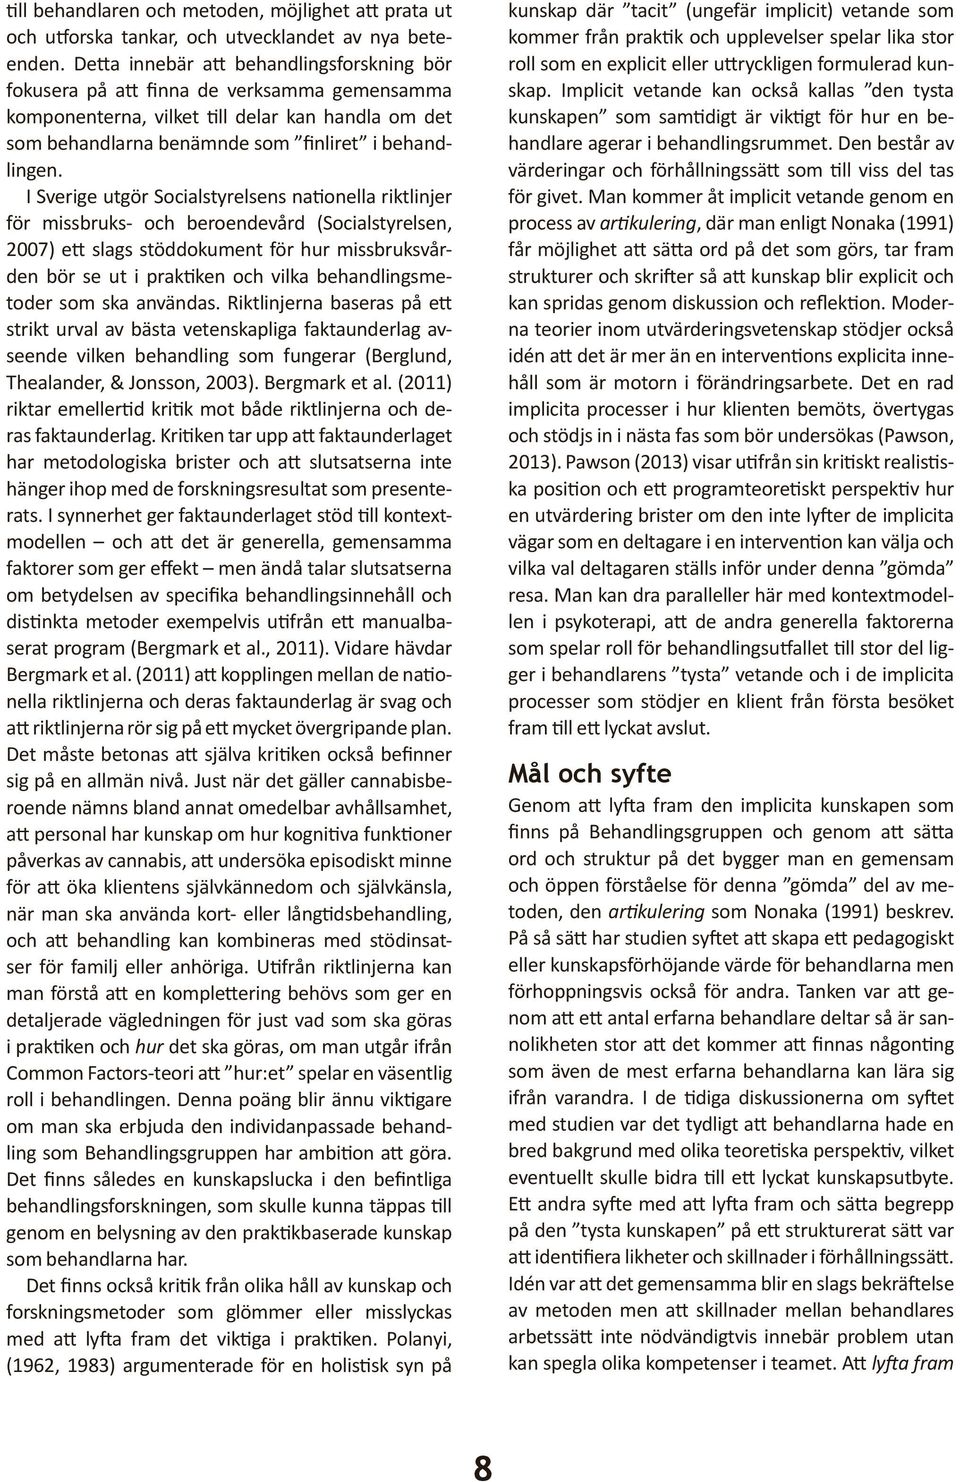 I Sverige utgör Socialstyrelsens nationella riktlinjer för missbruks- och beroendevård (Socialstyrelsen, 2007) ett slags stöddokument för hur missbruksvården bör se ut i praktiken och vilka